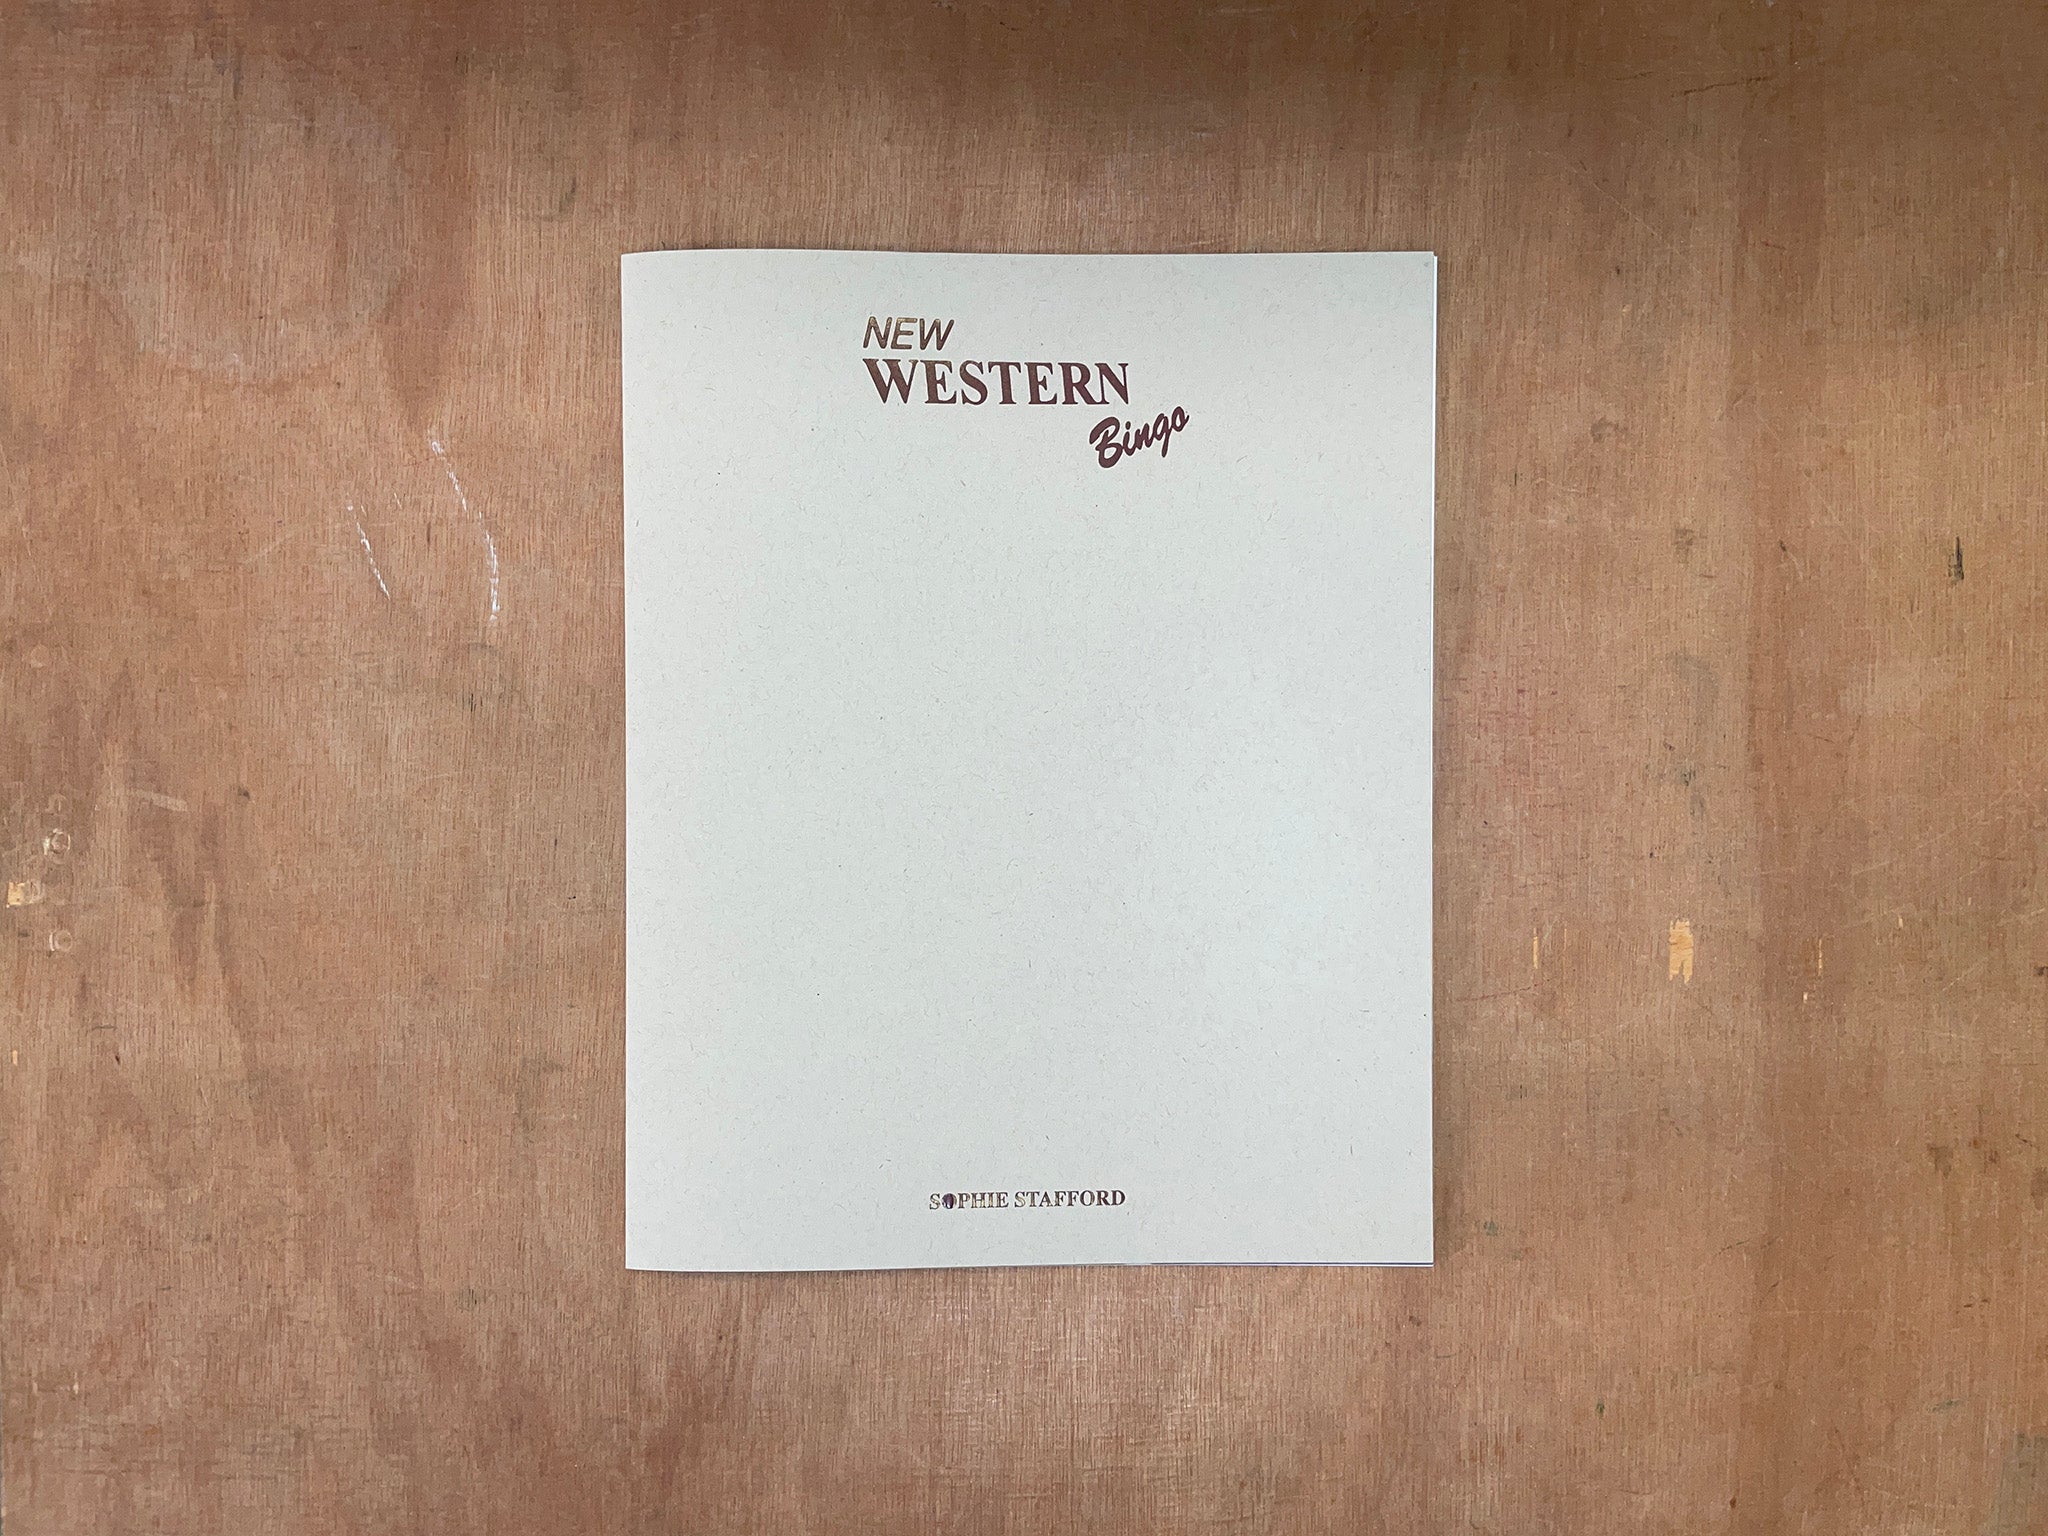 NEW WESTERN BINGO by Sophie Stafford